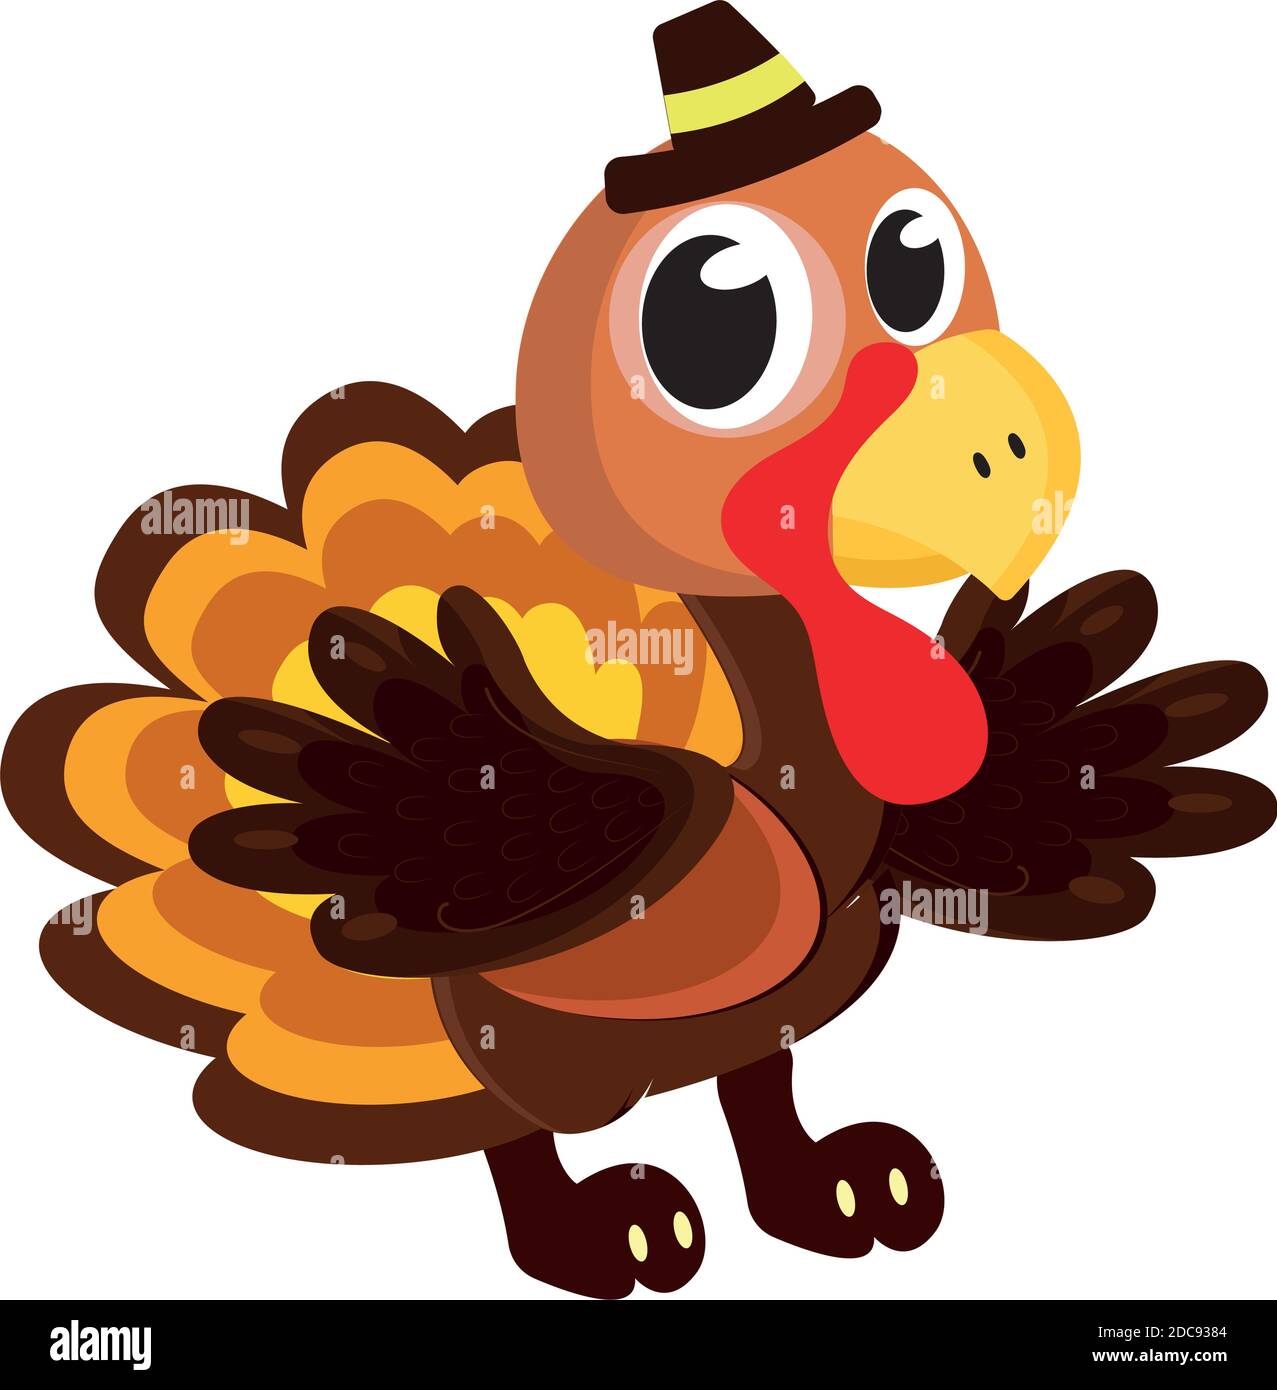 Cartoon of a turkey kawaii Stock Vector